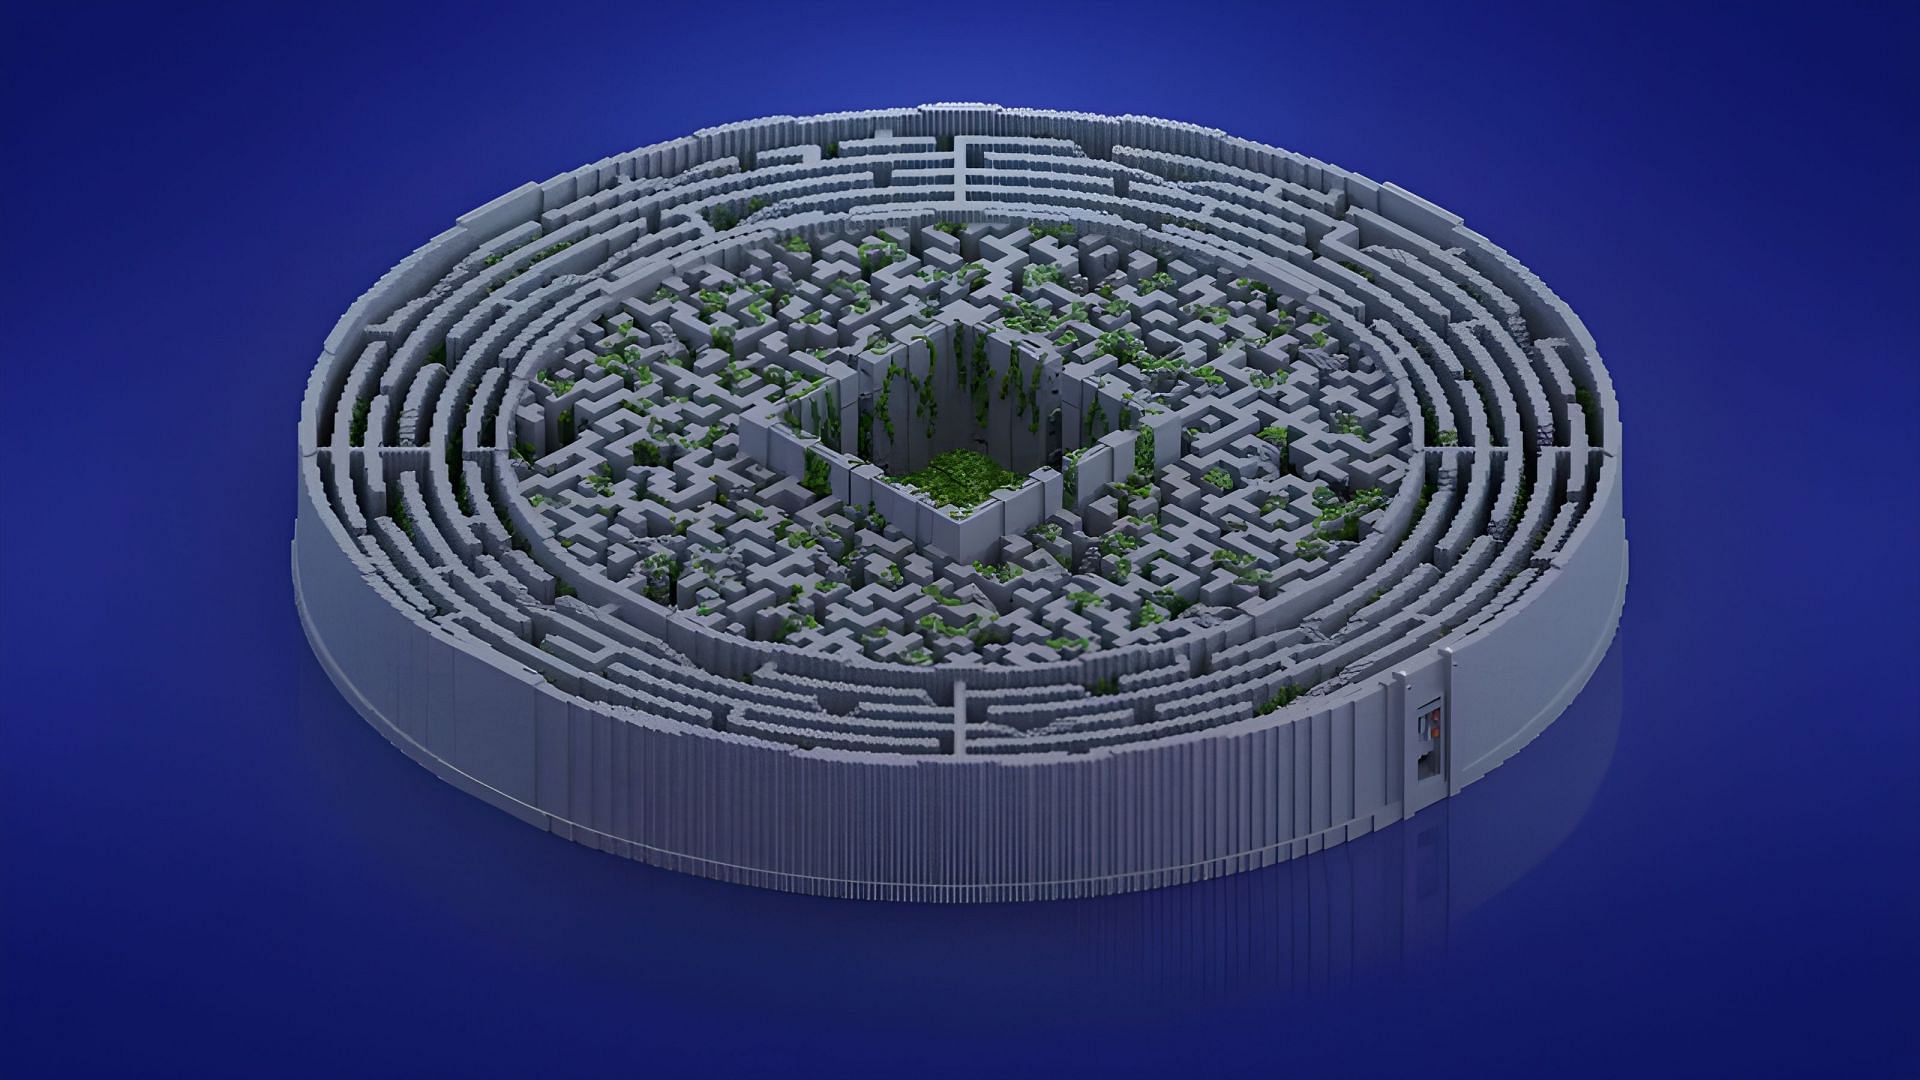 The Maze from the Maze Runner (Image via planetminecraft.com)